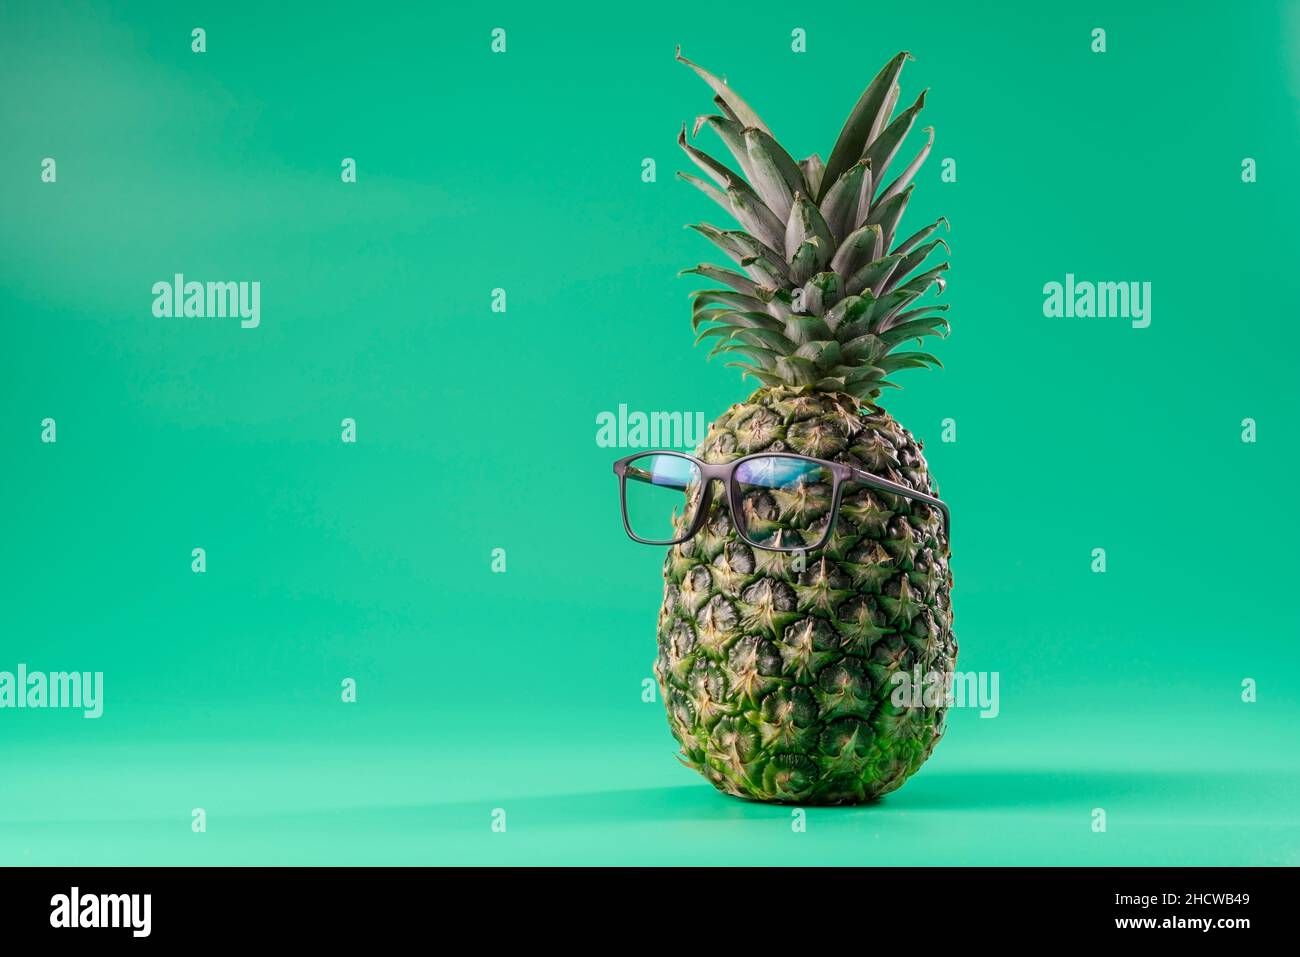 Interpretazione della frutta di ananas in un'immagine umana come in medicina oftalmica con vetri su sfondo verde. Spazio di copia Foto Stock